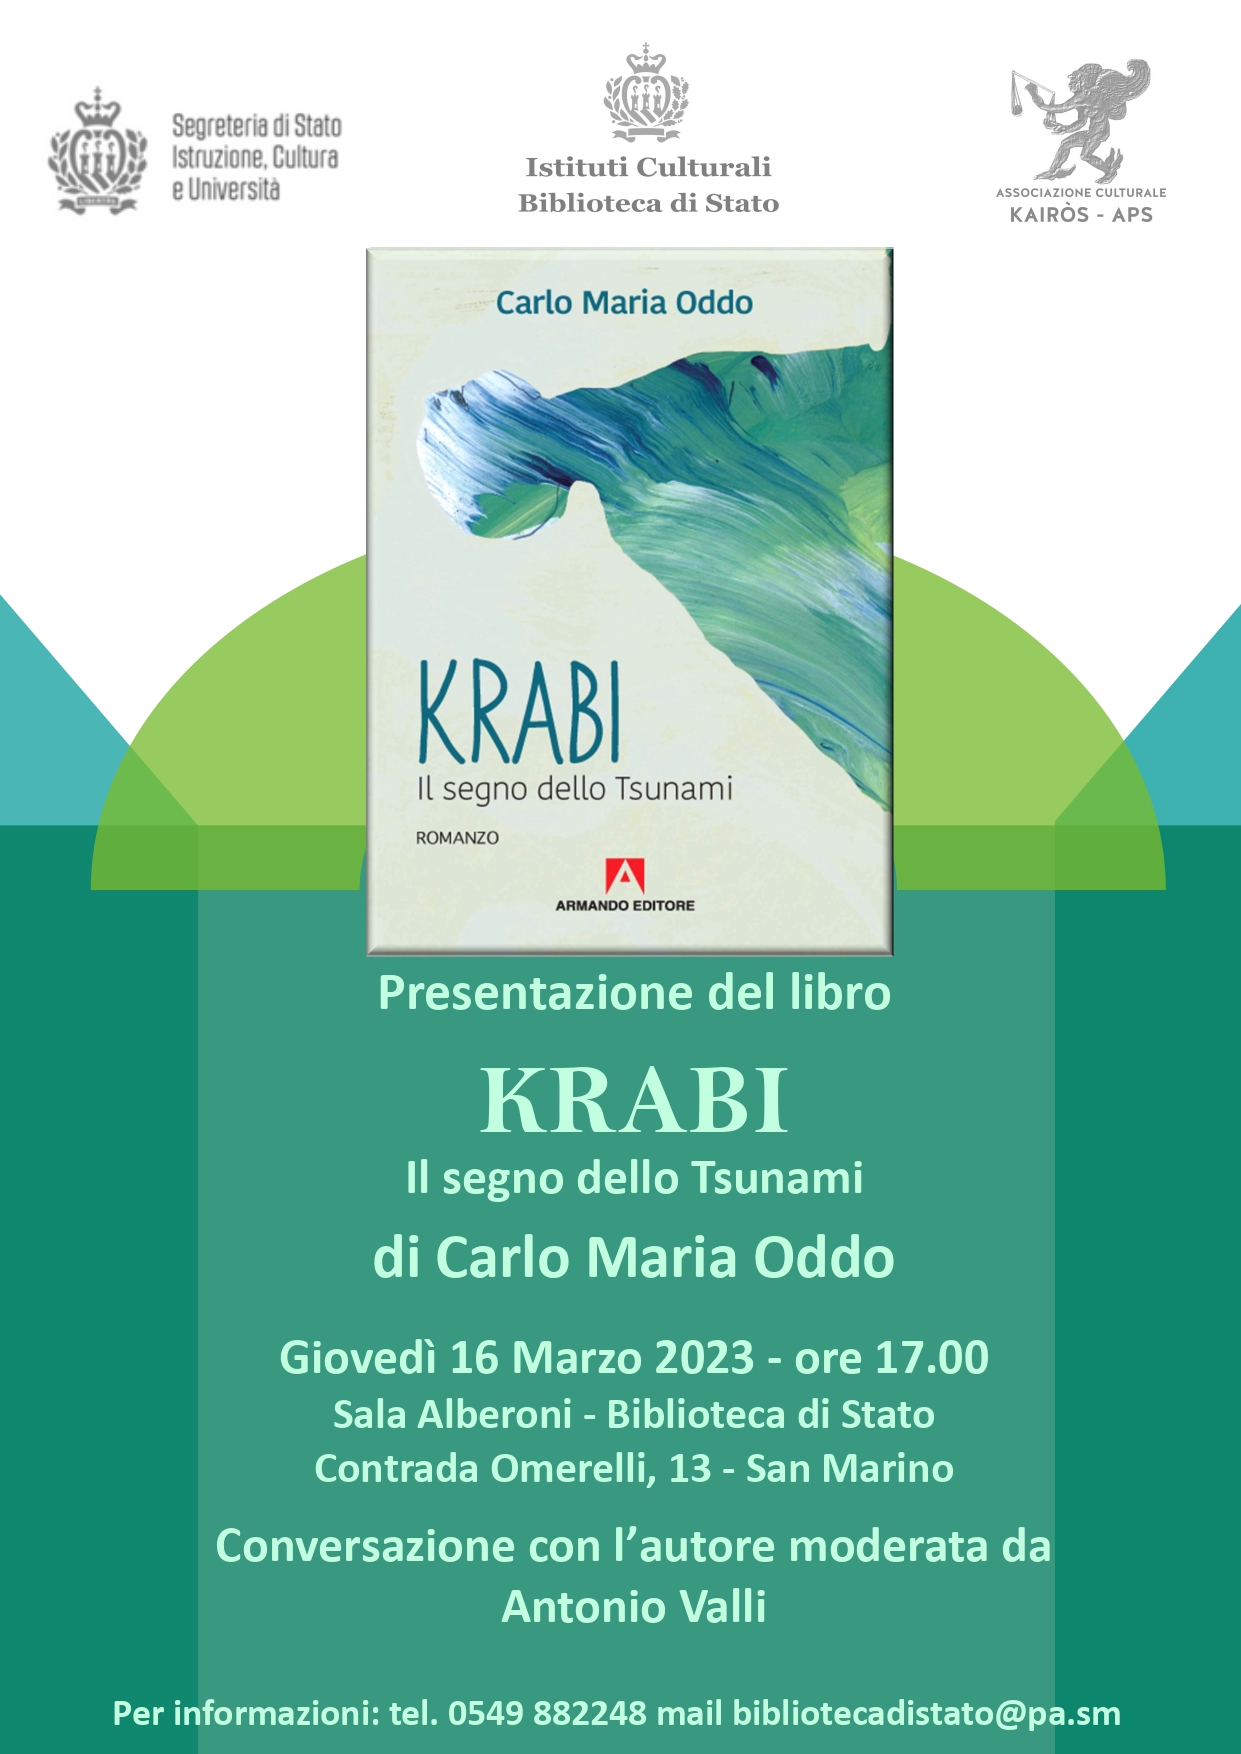 San Marino. Presentazione del libro “KRABI” dell’autore Carlo Maria Oddo